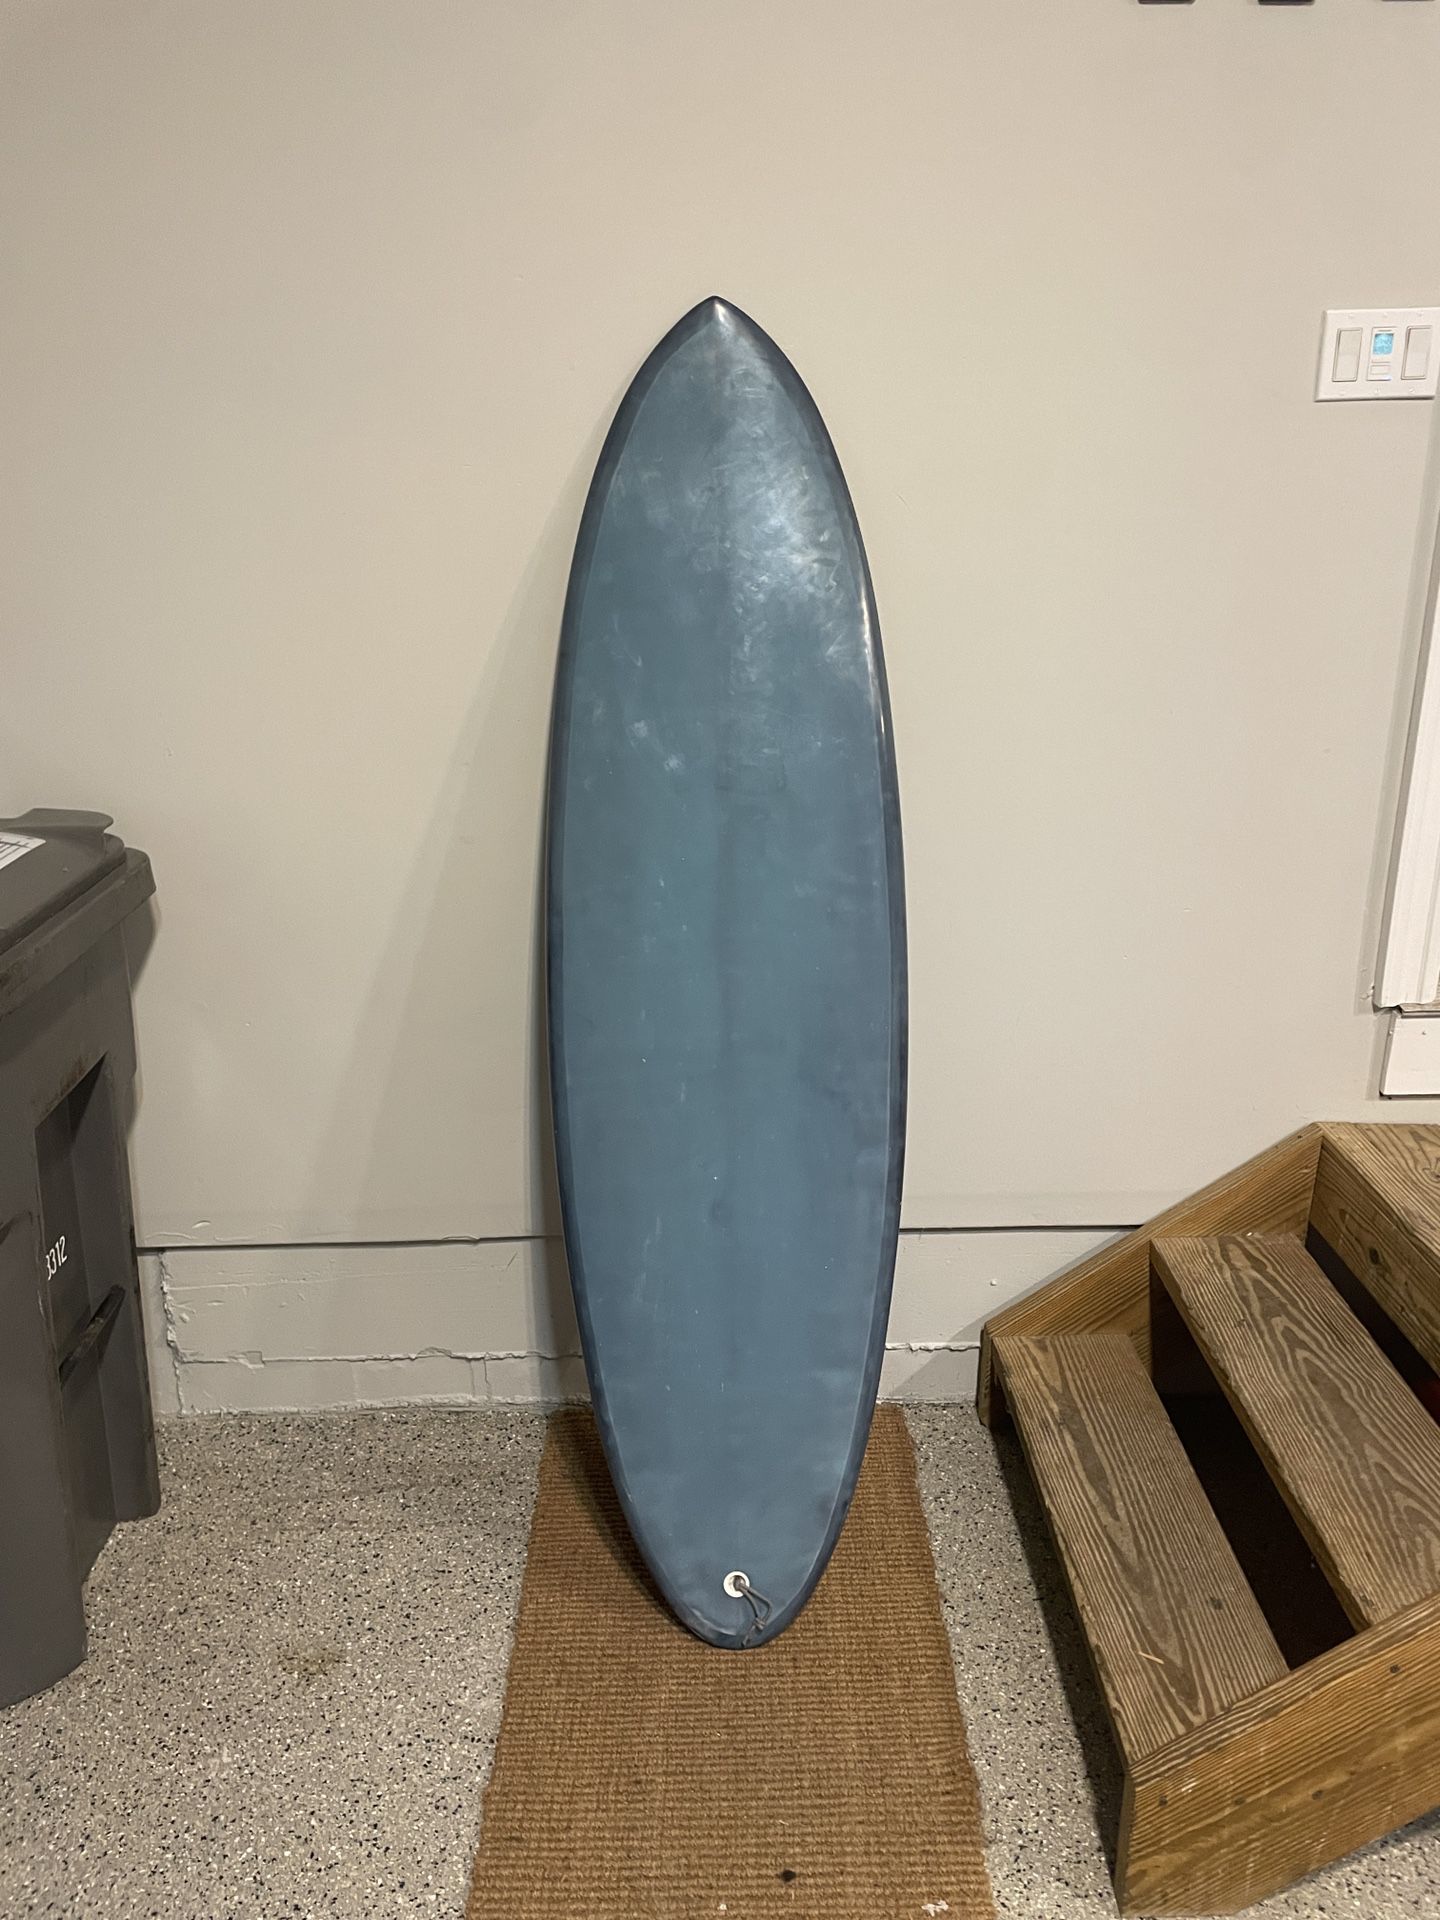 Surfboard 6’2” Retro Quad Fin